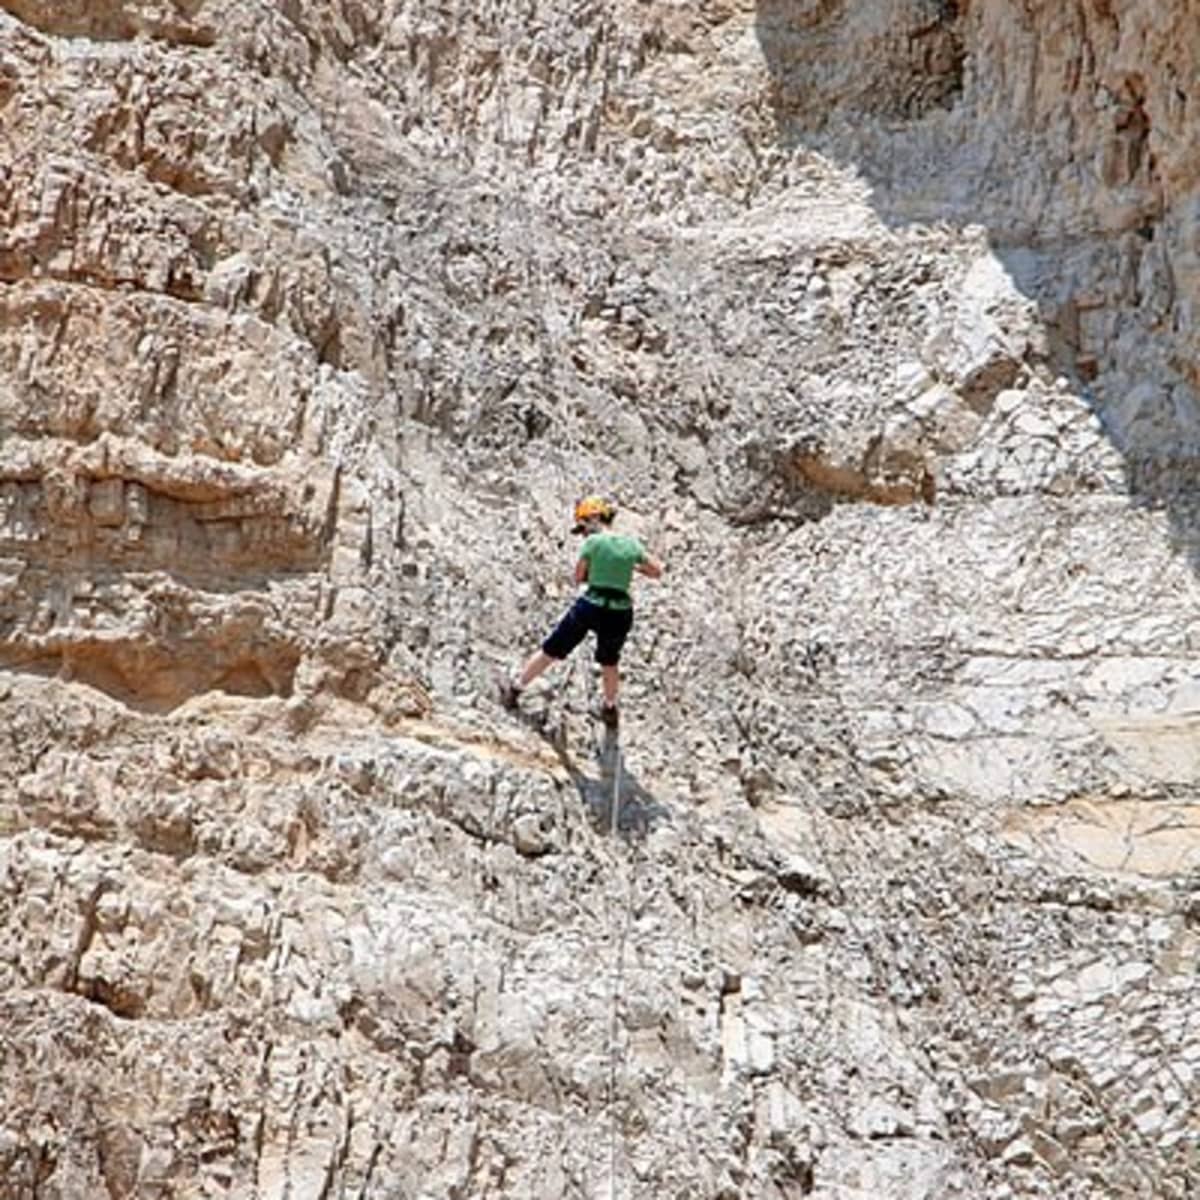 30KN Abbildung 8 Seil Absender für Klettern Bergsteigen Rappelling Rescue 